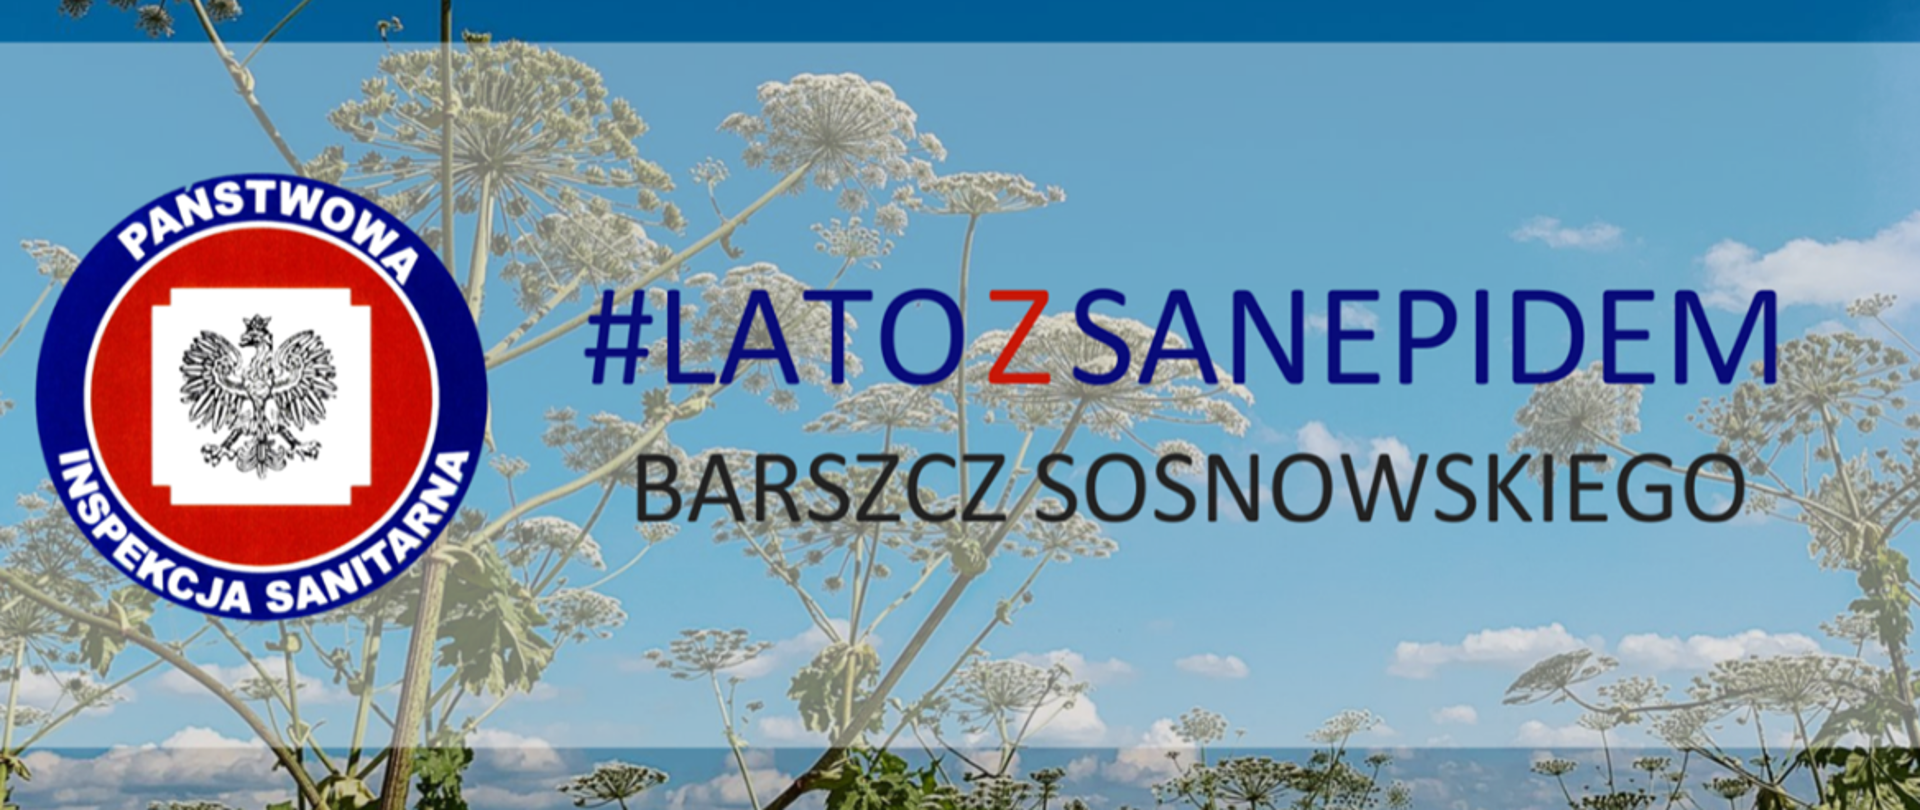 Z przodu fotografii widoczne logo Państwowej Inspekcji Sanitarnej obok loga widoczny napis #latozsanepidem Barszcz Sosnowskiego, w tle fotografii widoczna roślina - barszcz sosnowskiego.